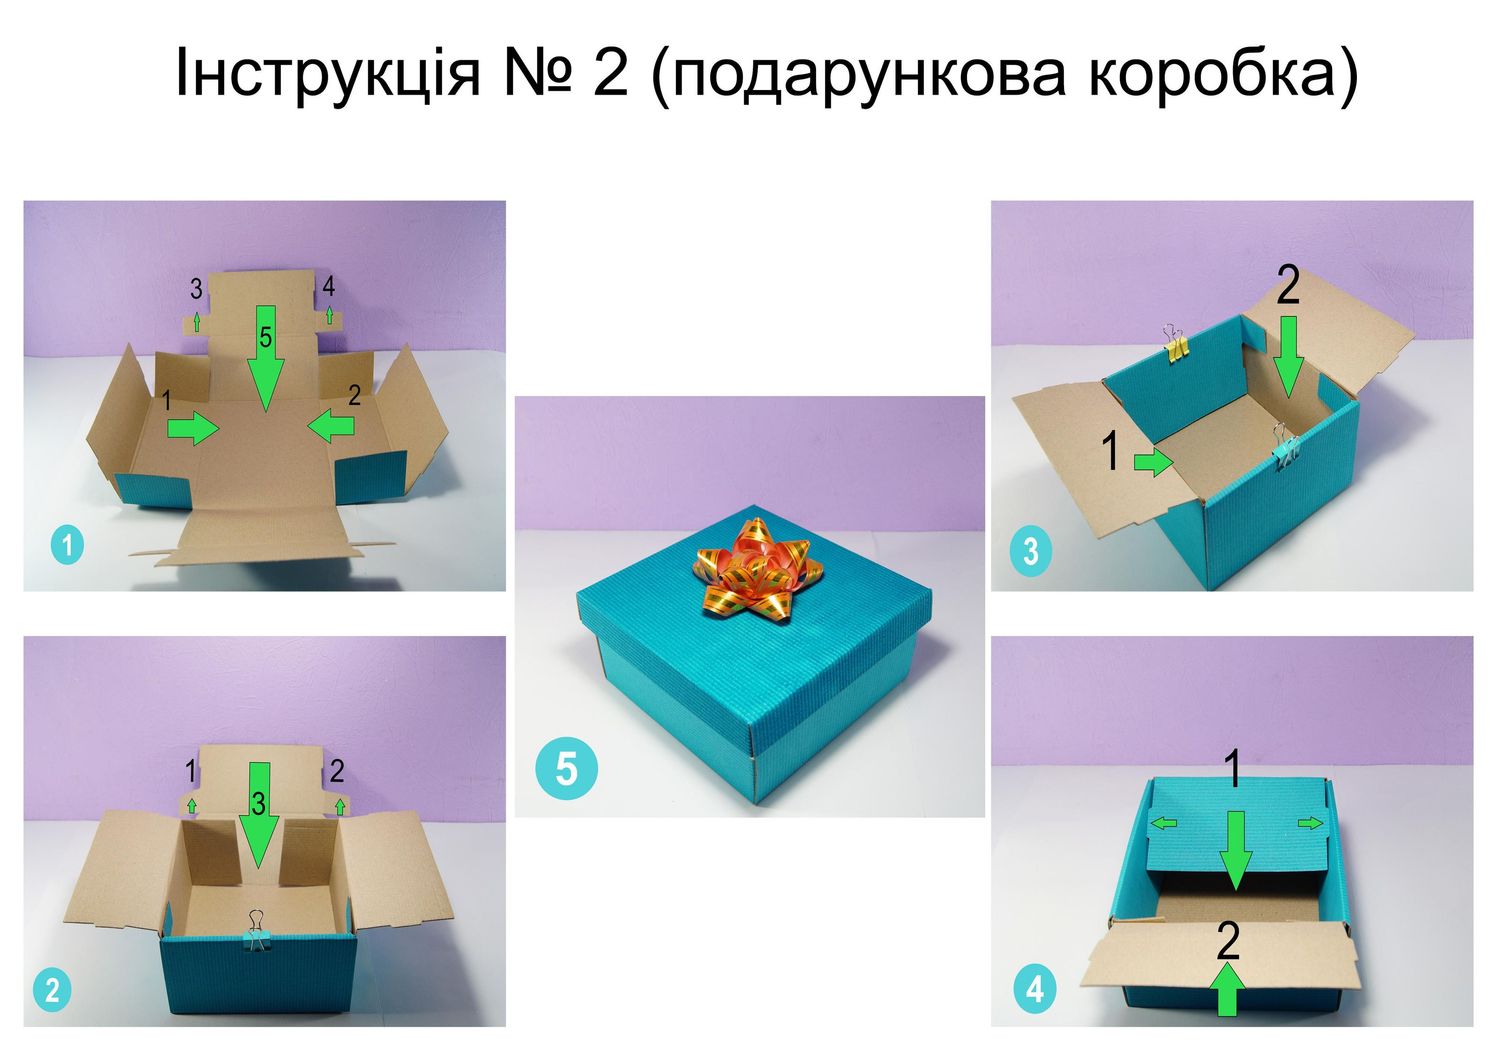 Подарочная коробка двухсторонний картон "зеленая" (25х25х25)